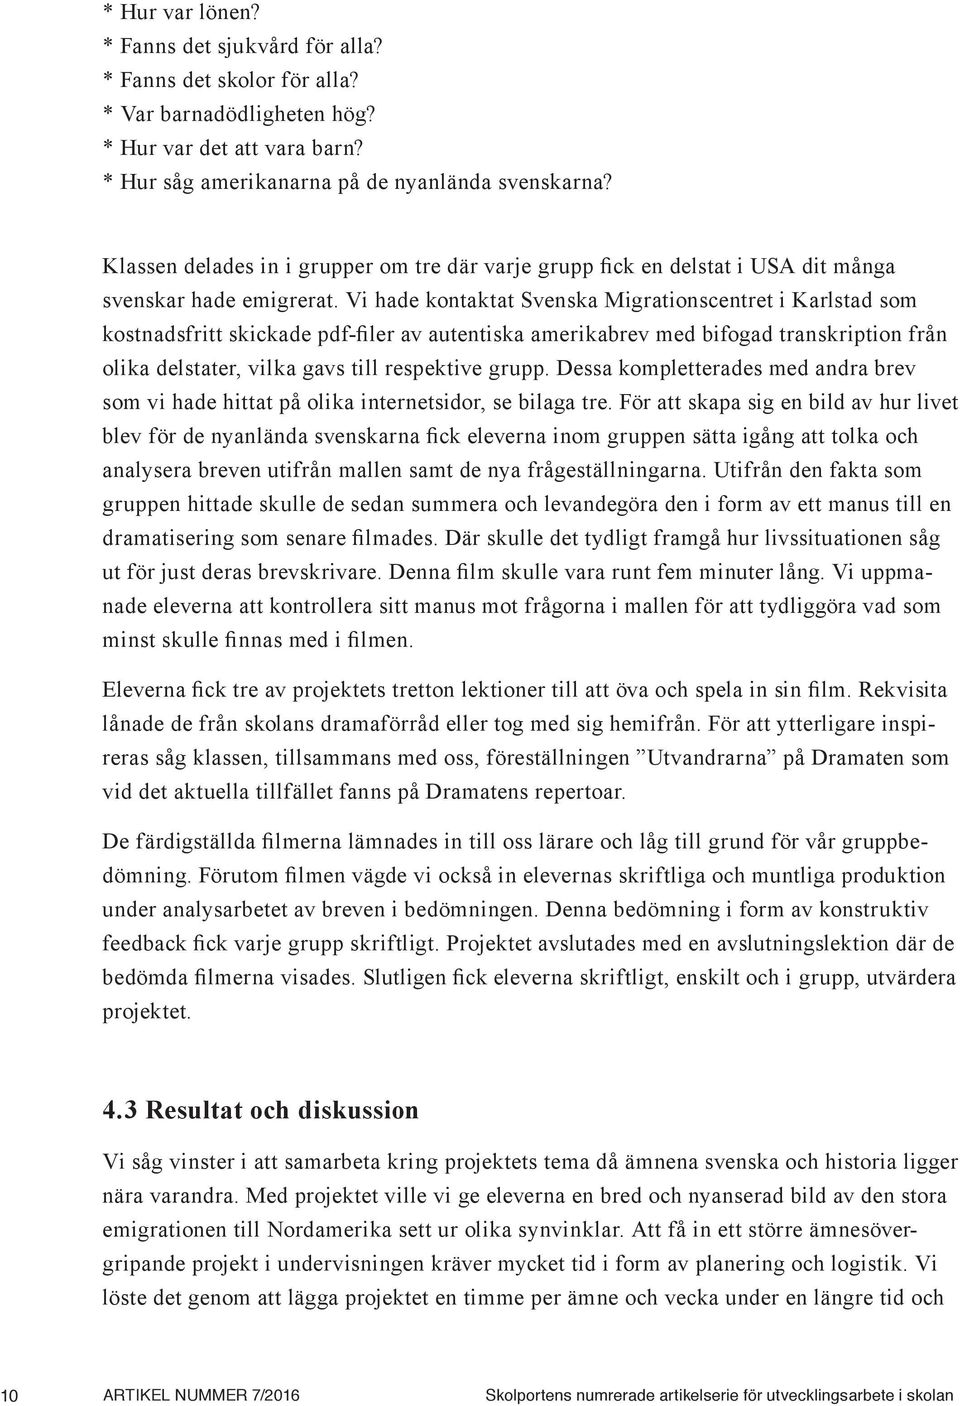 Vi hade kontaktat Svenska Migrationscentret i Karlstad som kostnadsfritt skickade pdf-filer av autentiska amerikabrev med bifogad transkription från olika delstater, vilka gavs till respektive grupp.